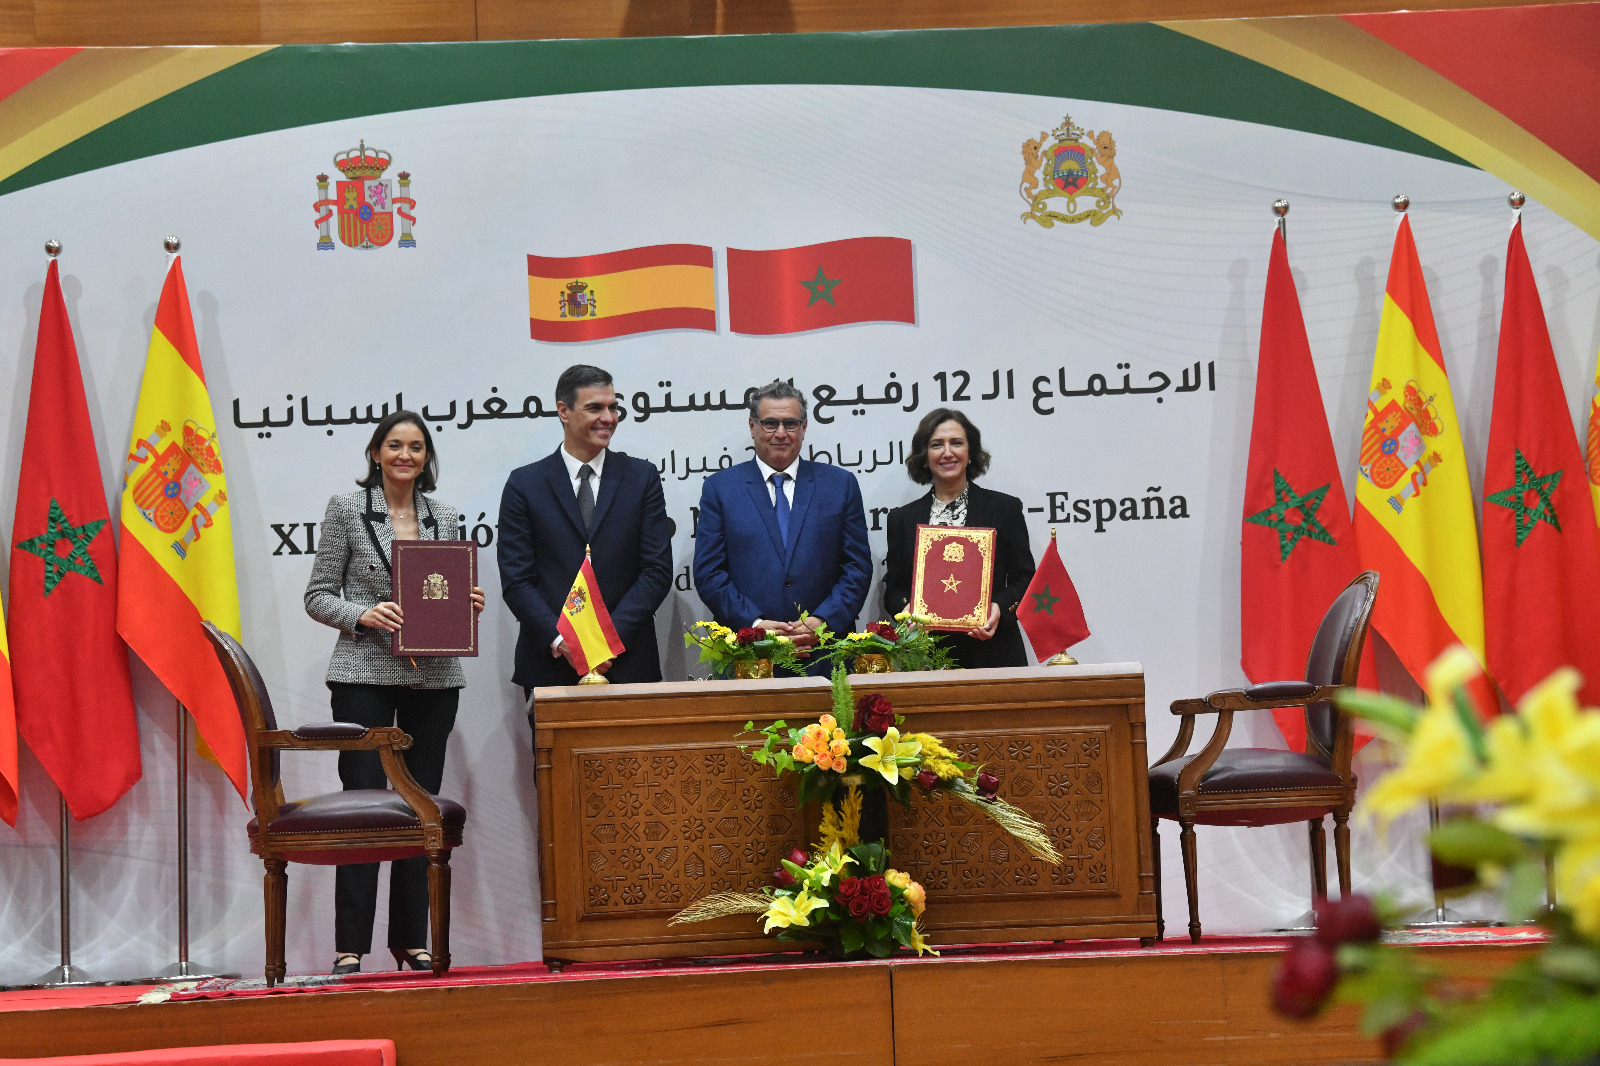 XIIè Réunion de Haut Niveau Maroc-Espagne: la moisson des accords conclus (vidéo-diapo)